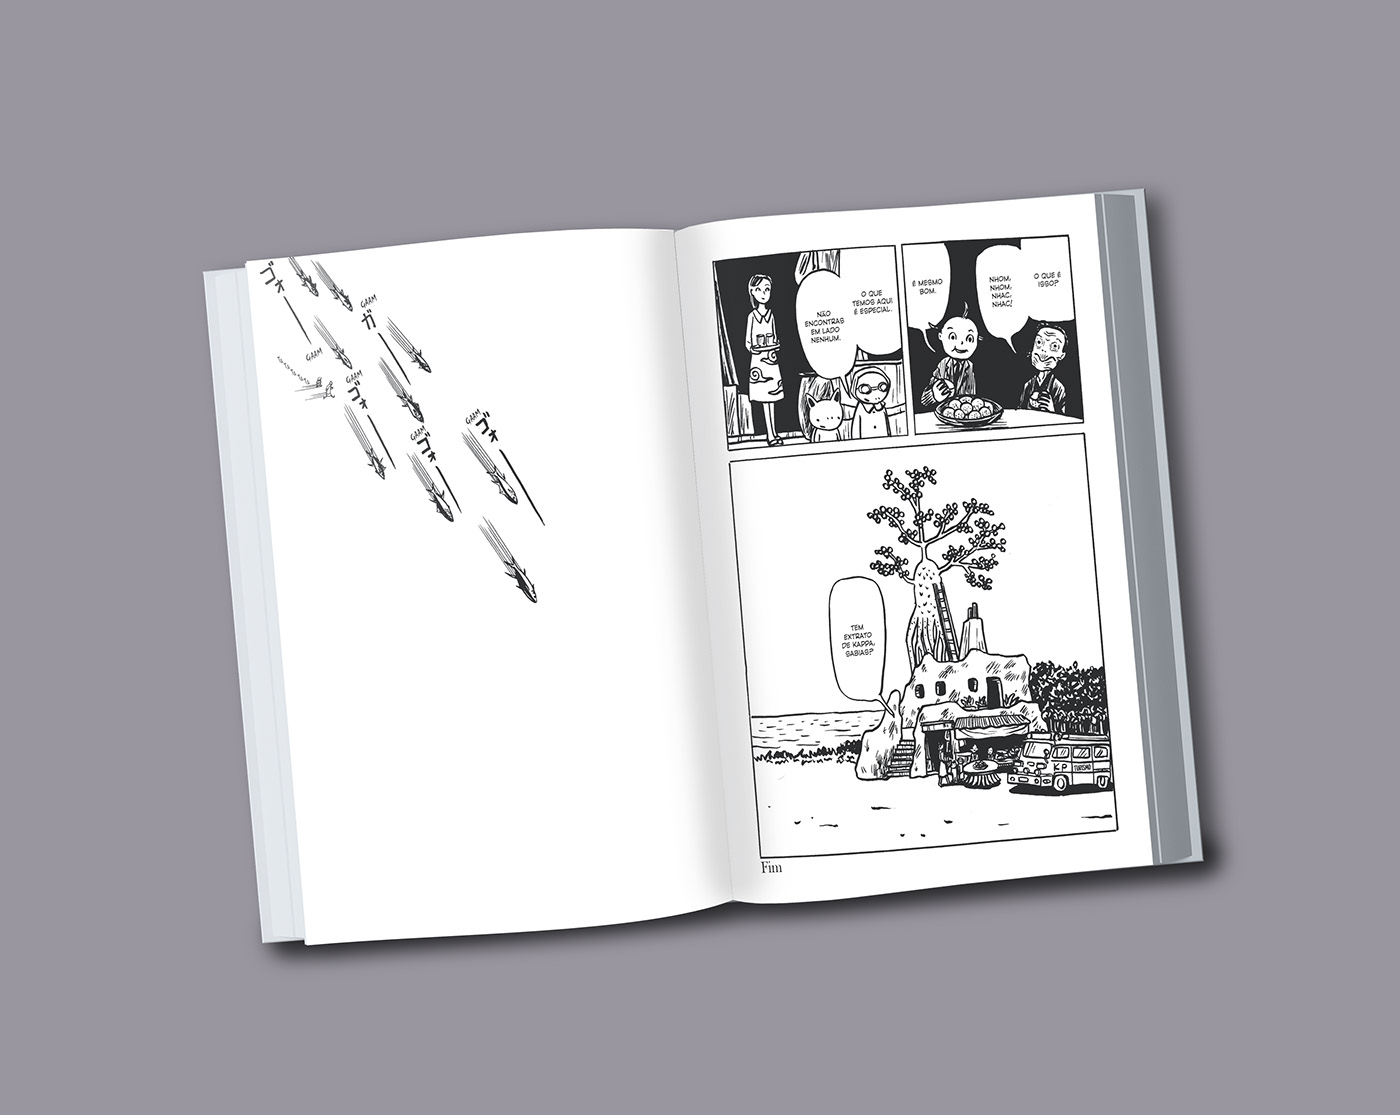 Capa comics design design editorial edição hq letras manga produção editorial quadrinhos